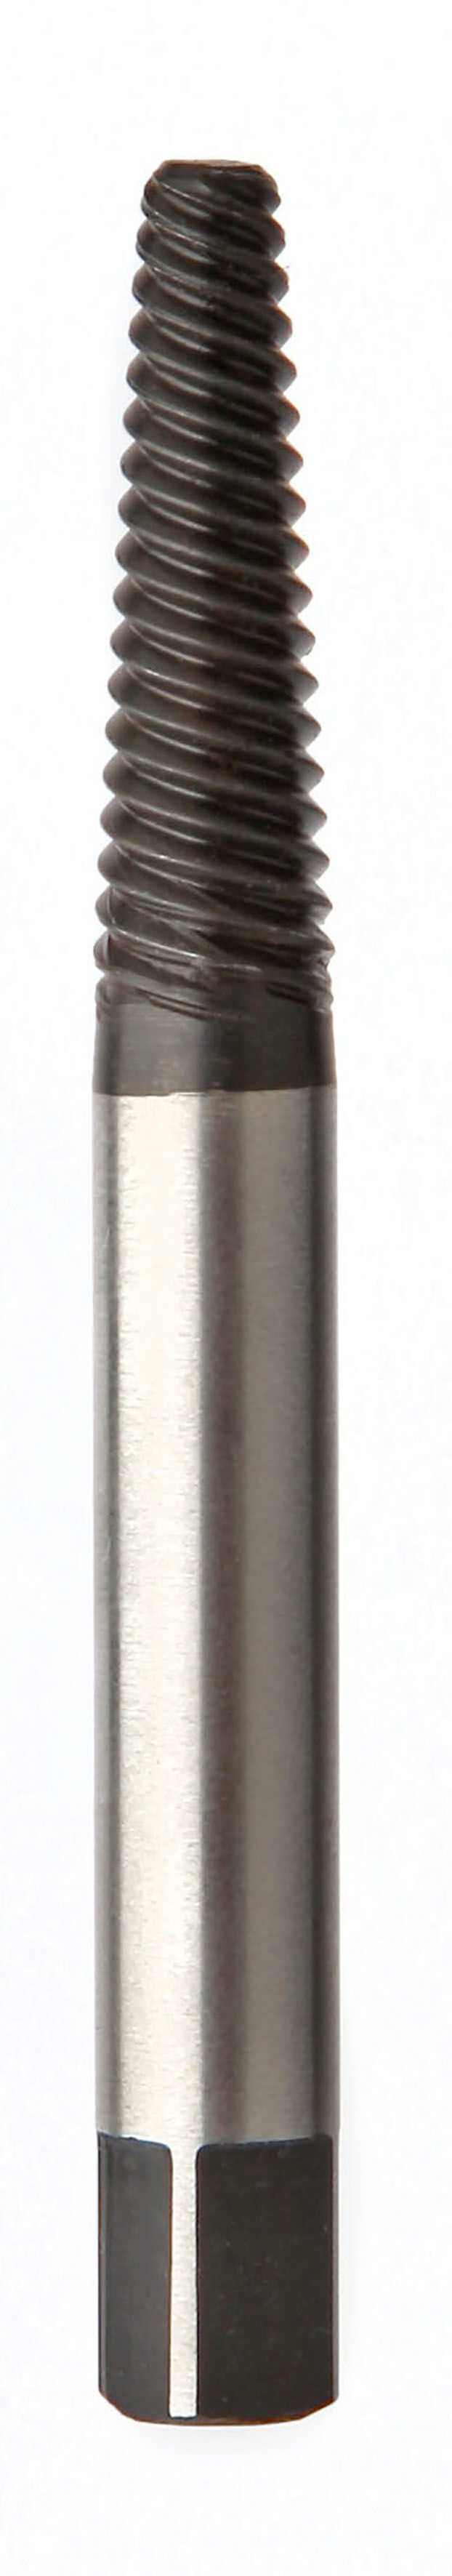 Extracteur de vis - Diamètre 8,5 mm - PIHER - MisterMateriaux